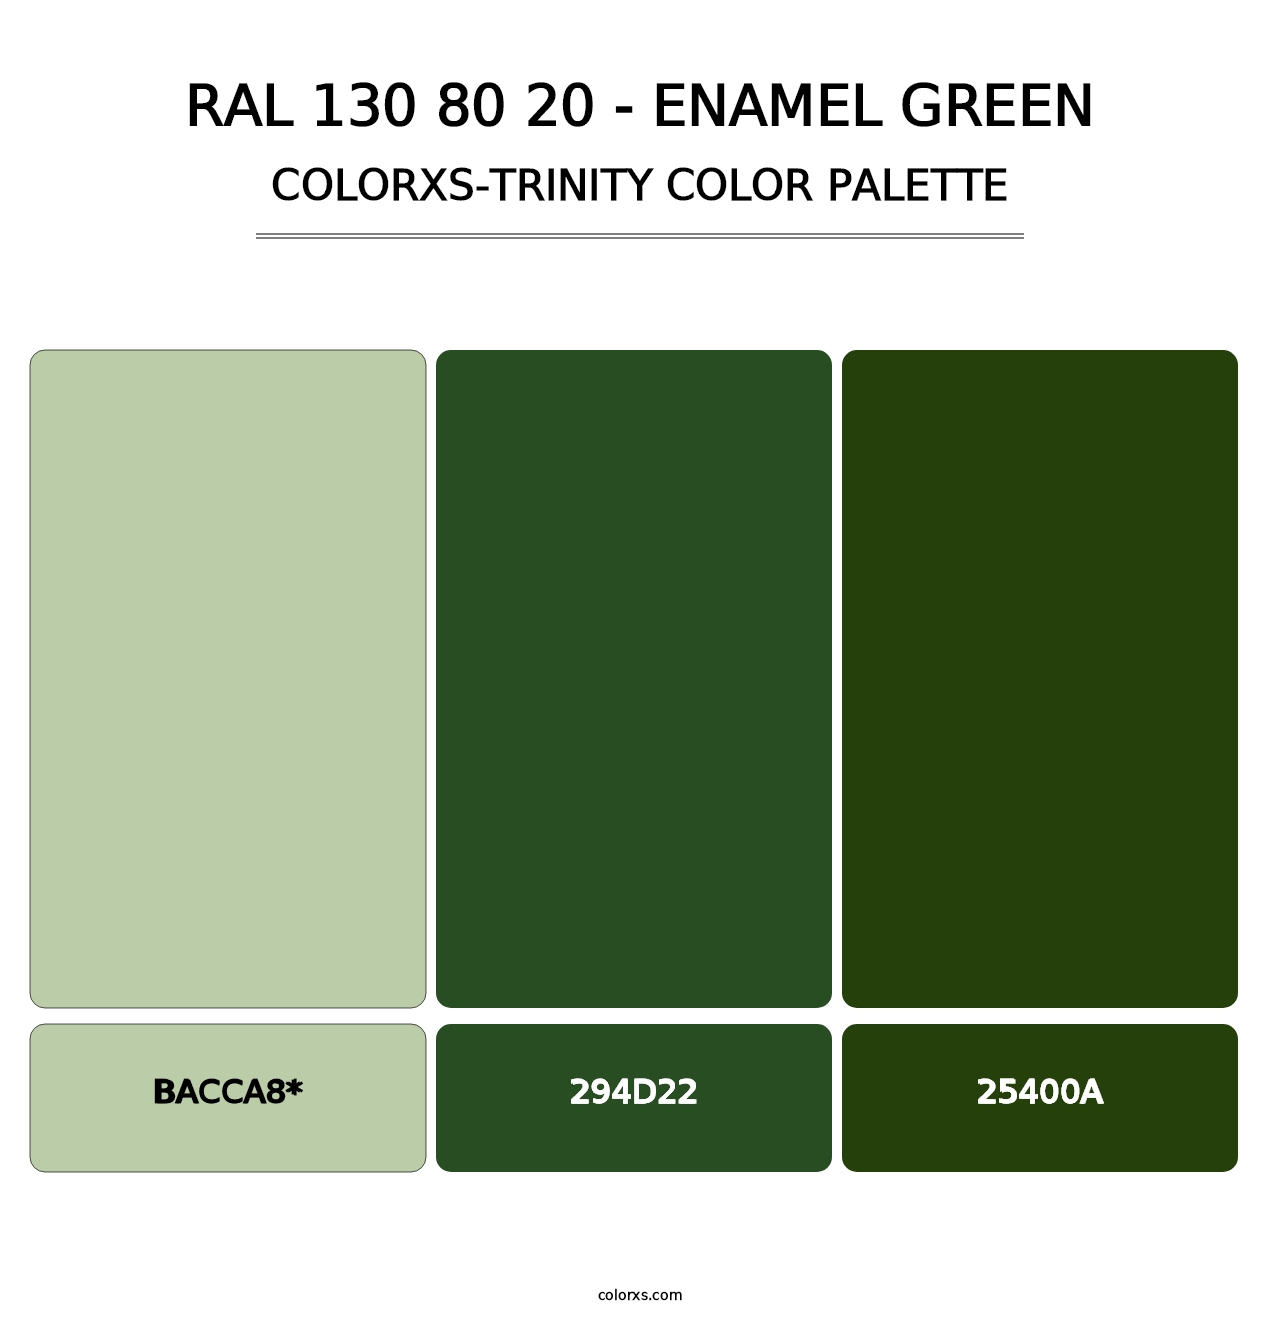 RAL 130 80 20 - Enamel Green - Colorxs Trinity Palette